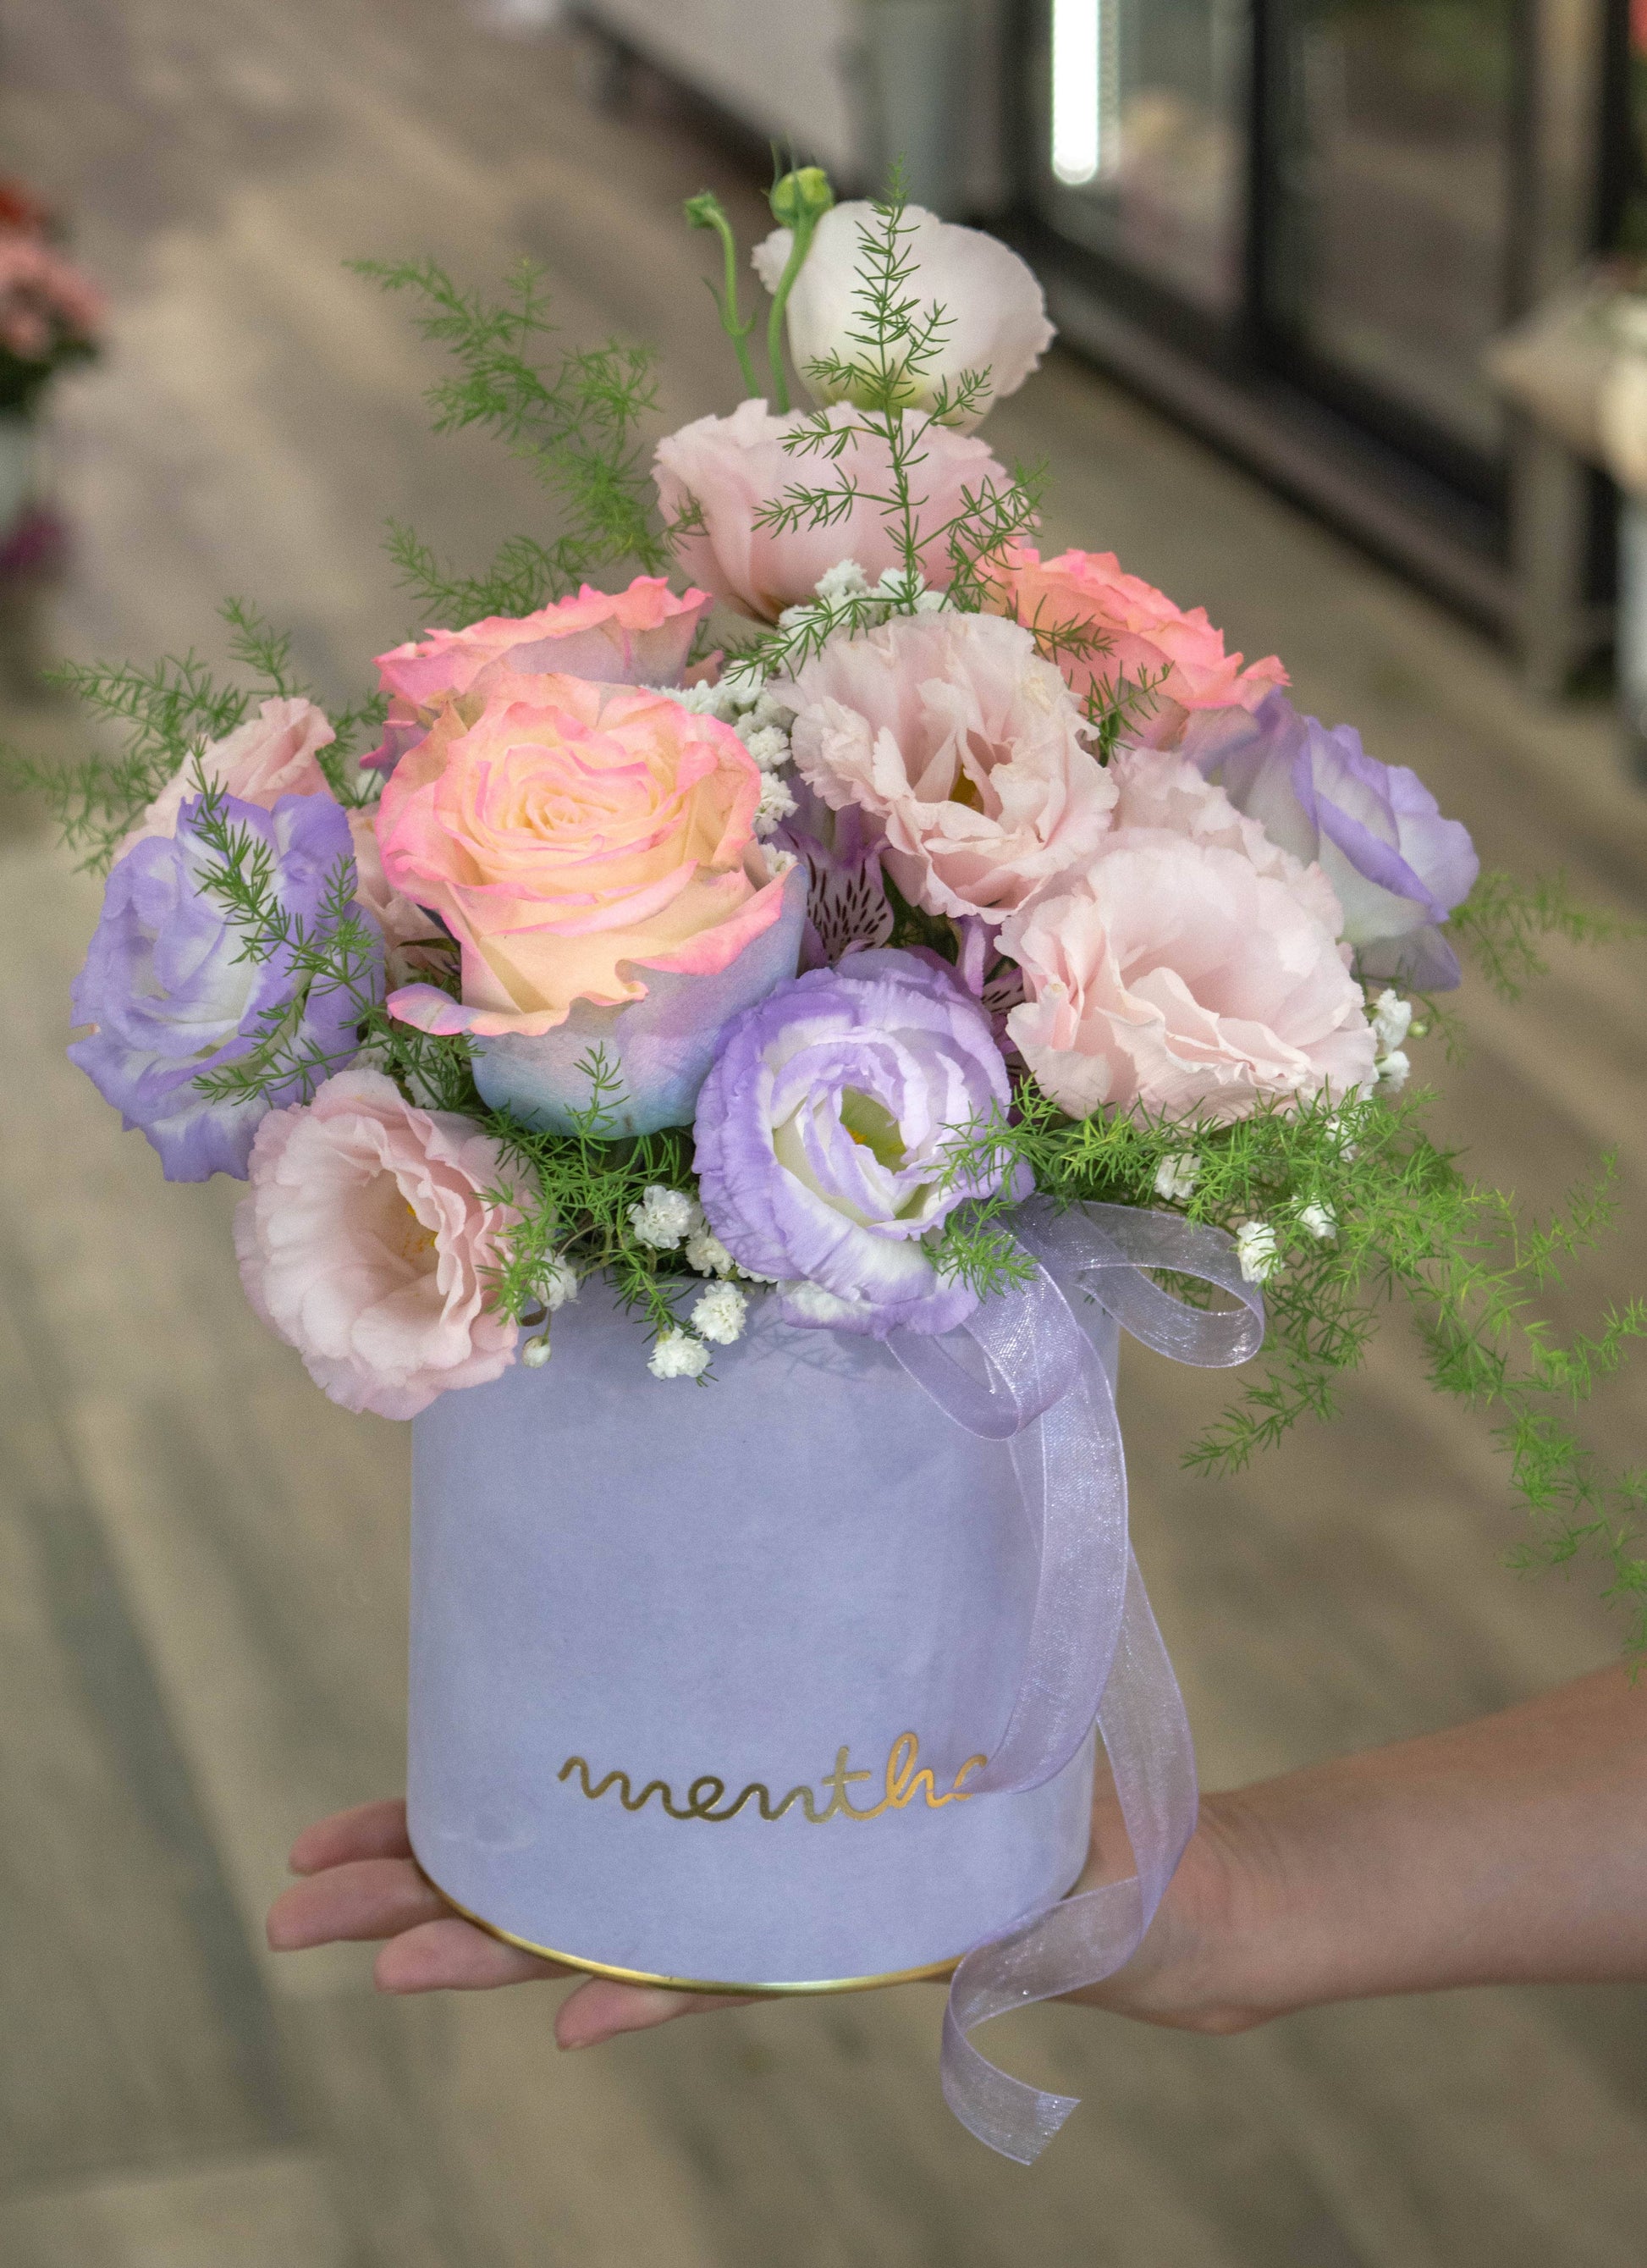 Bucurați-vă de frumusețea naturală a lisianthus și a florilor viu colorate într-o cutie plină de viață, cu livrare GRATUITĂ în Resita